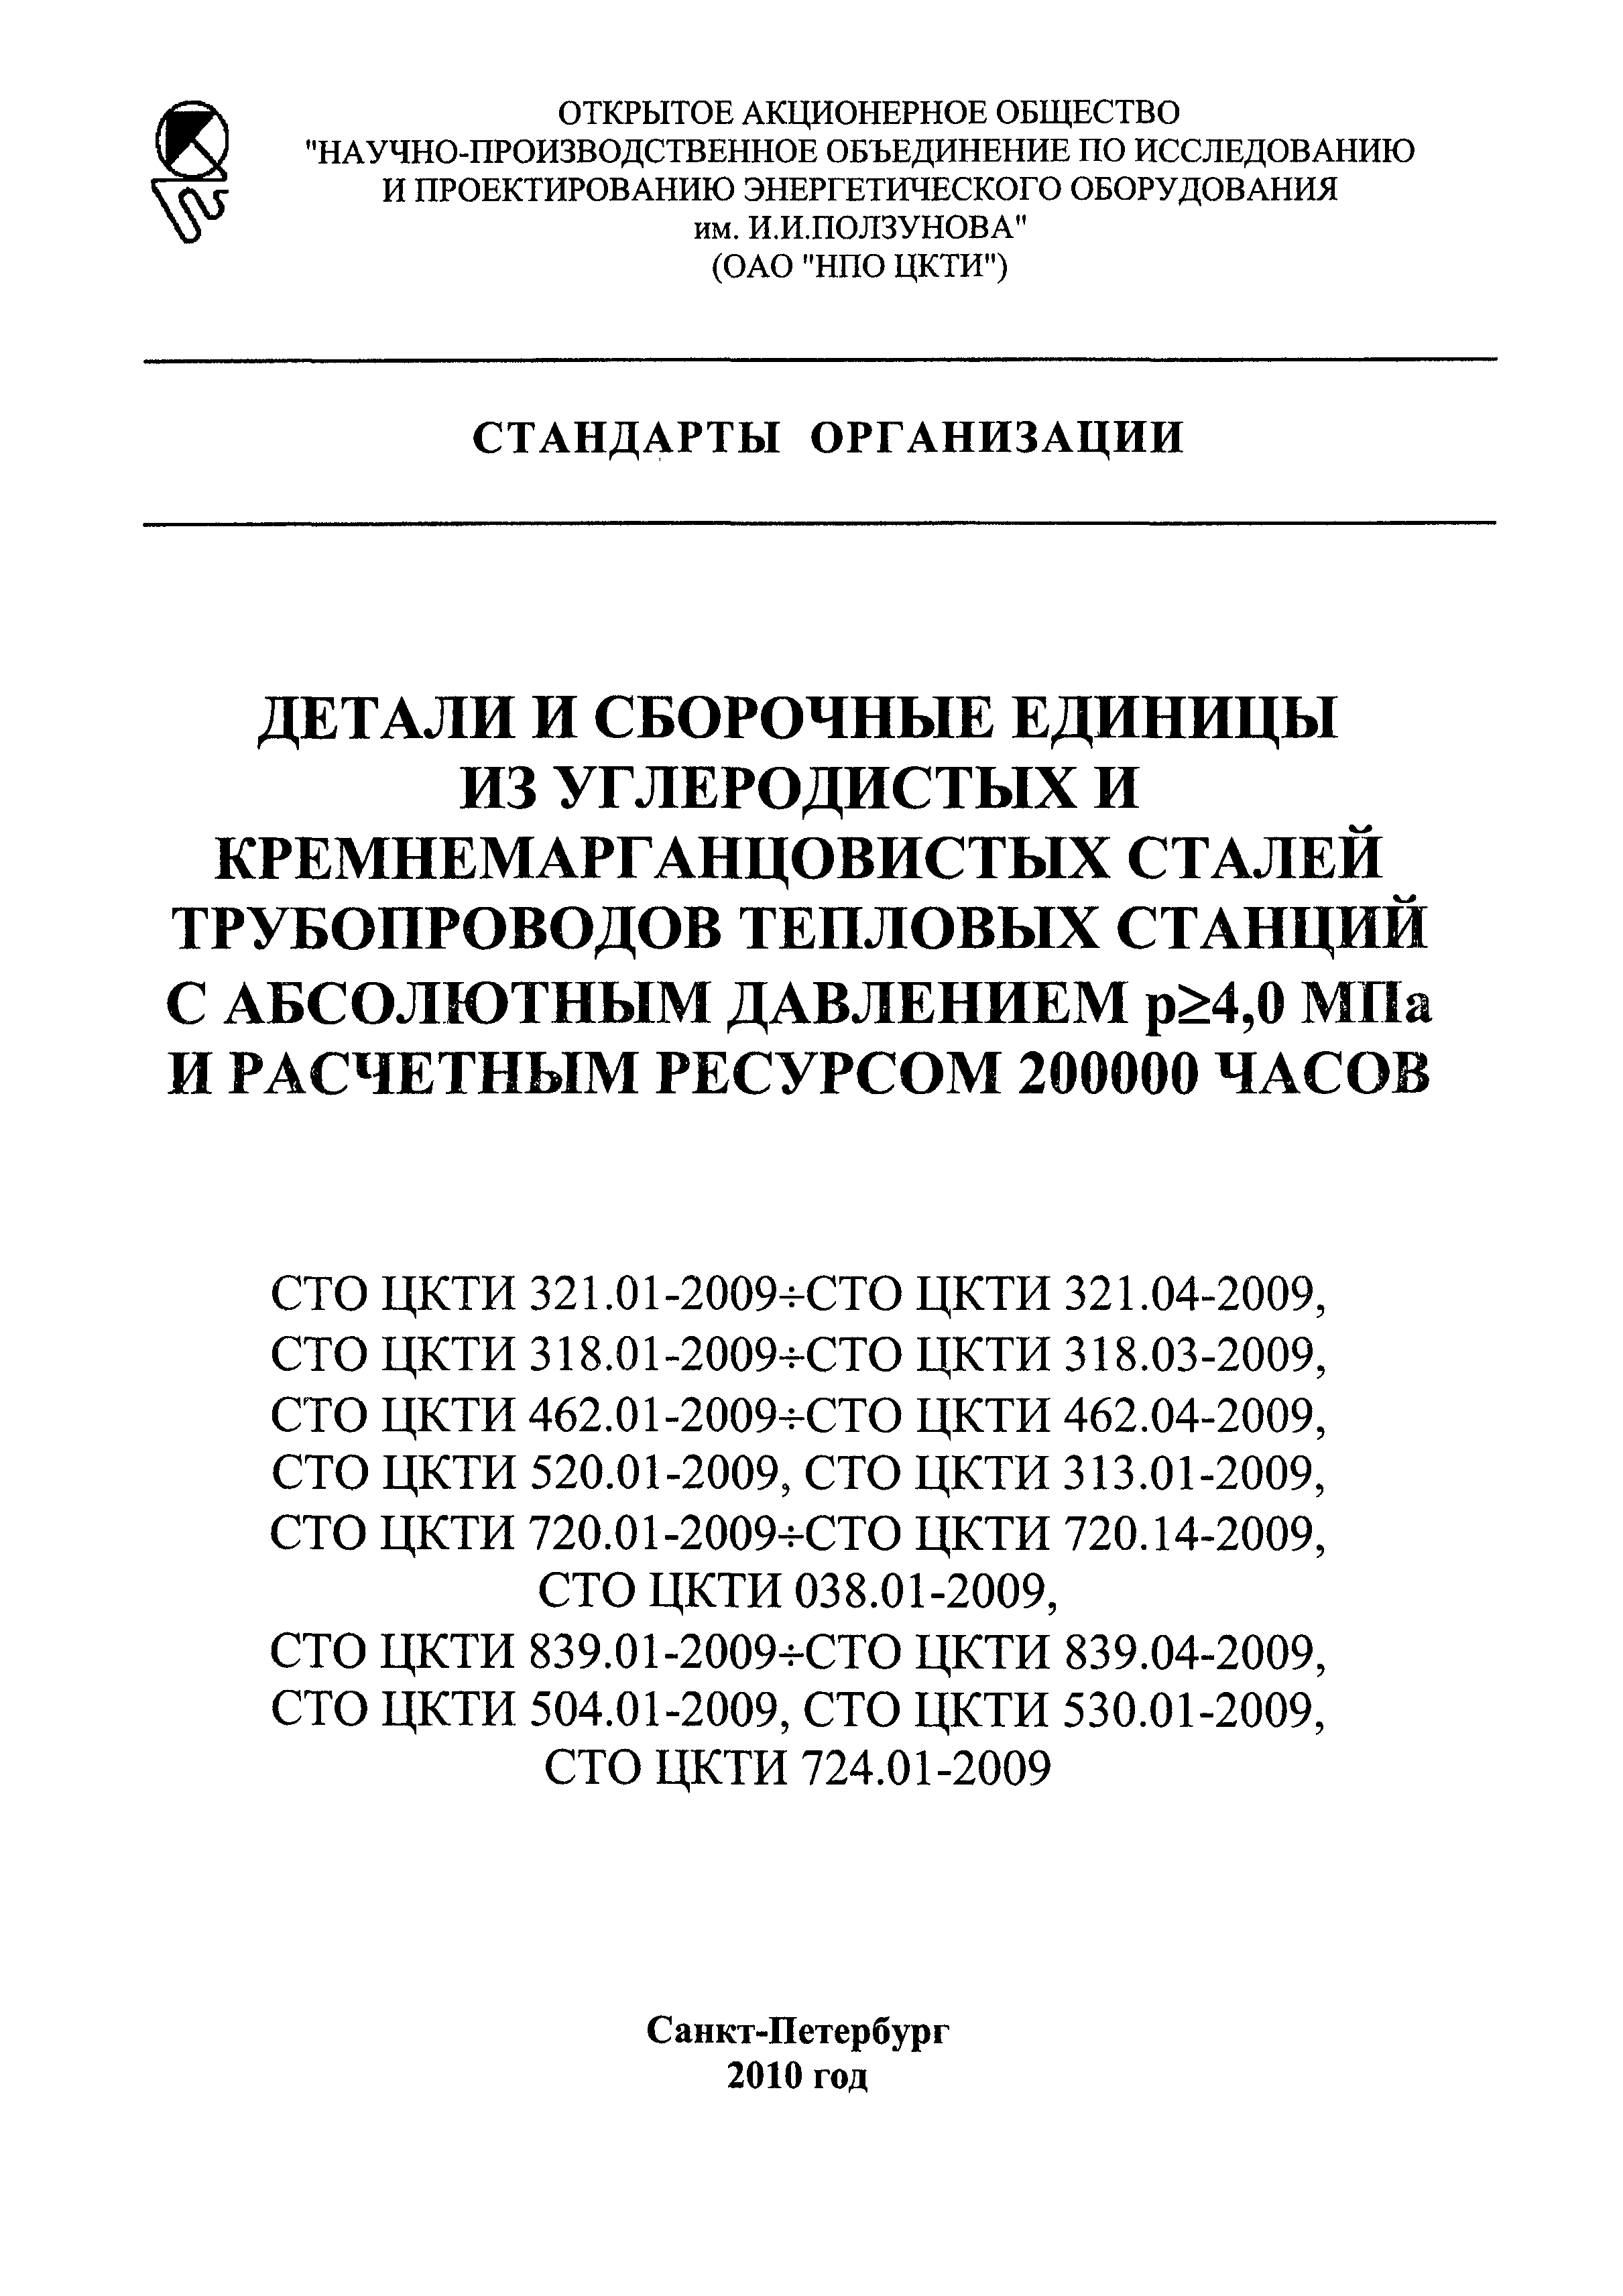 СТО ЦКТИ 720.06-2009